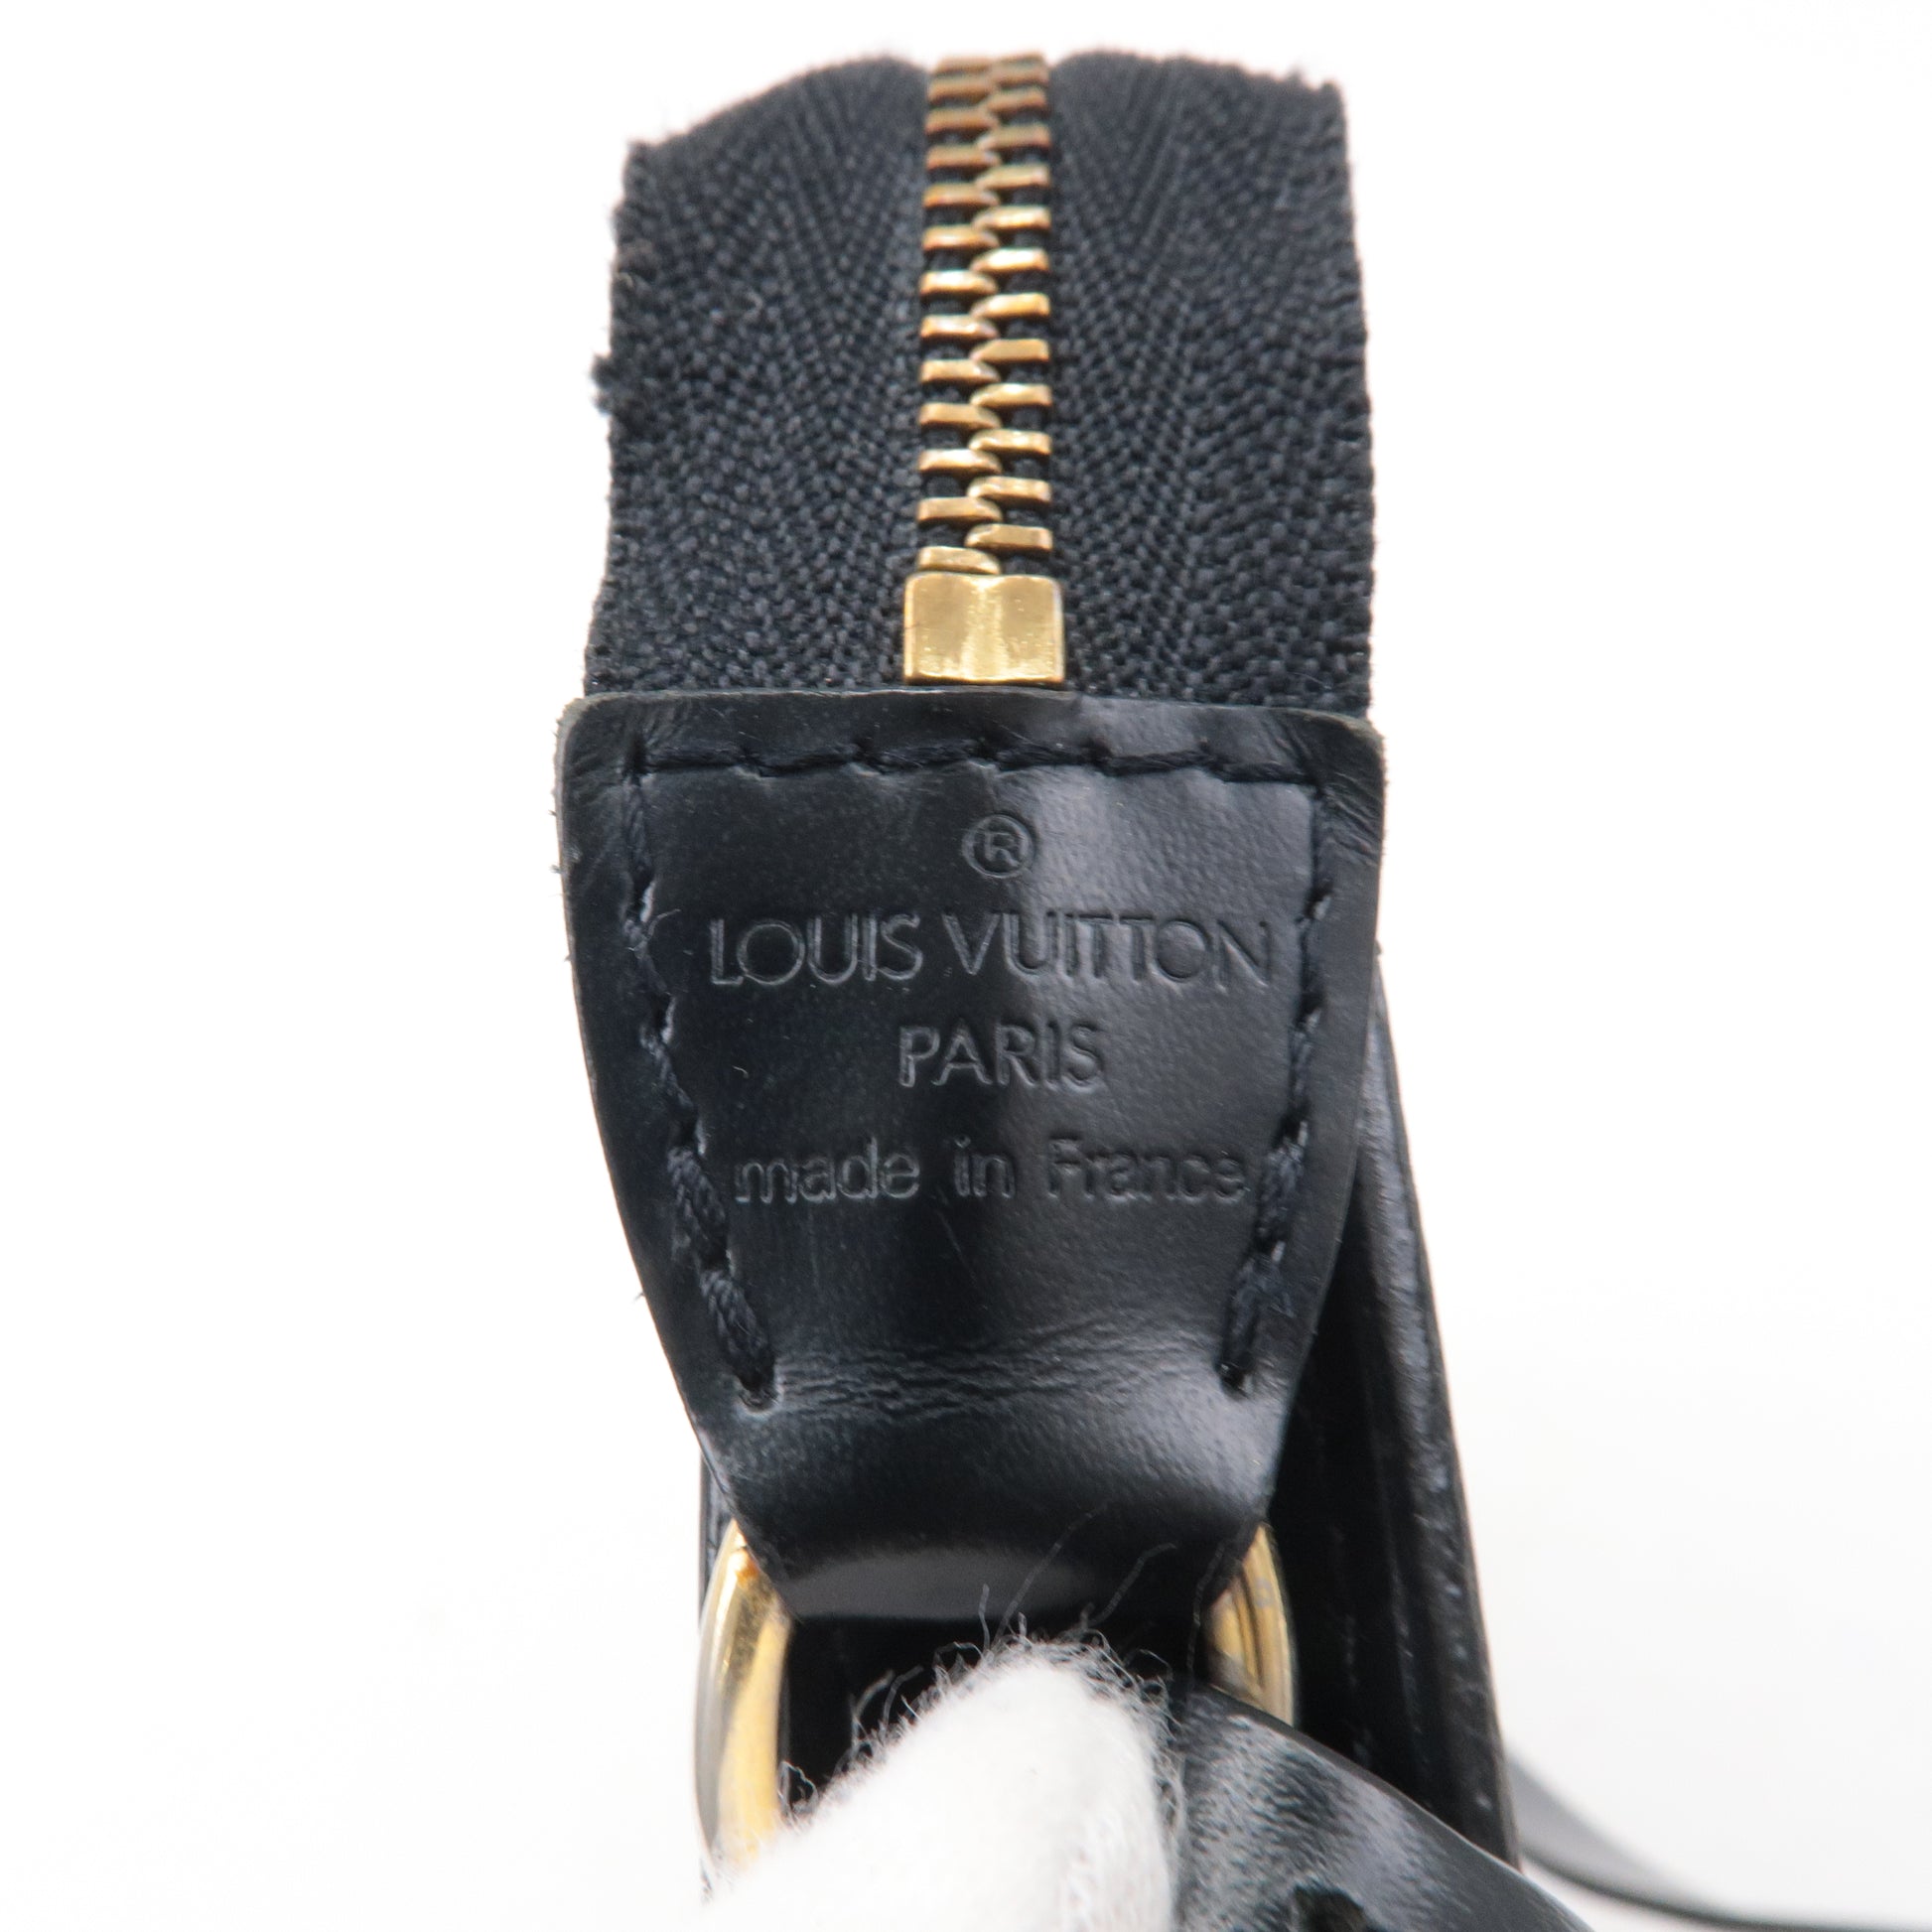 Louis Vuitton Noir Epi Leather Pochette Accessoires 24 Bag Louis